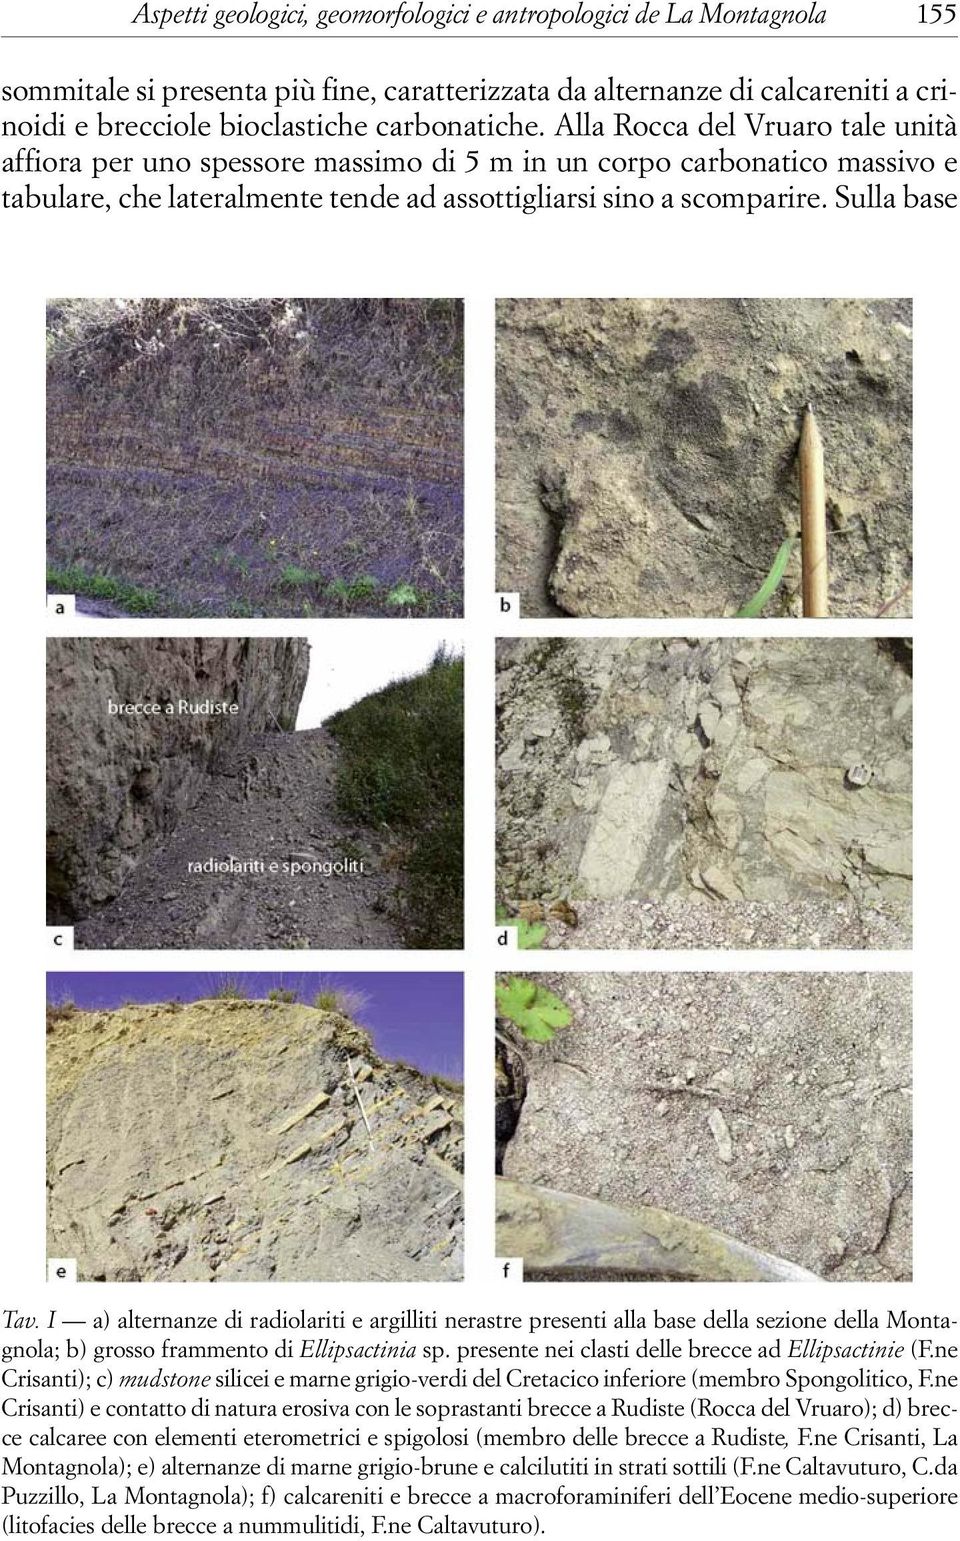 I a) alternanze di radiolariti e argilliti nerastre presenti alla base della sezione della Montagnola; b) grosso frammento di Ellipsactinia sp. presente nei clasti delle brecce ad Ellipsactinie (F.